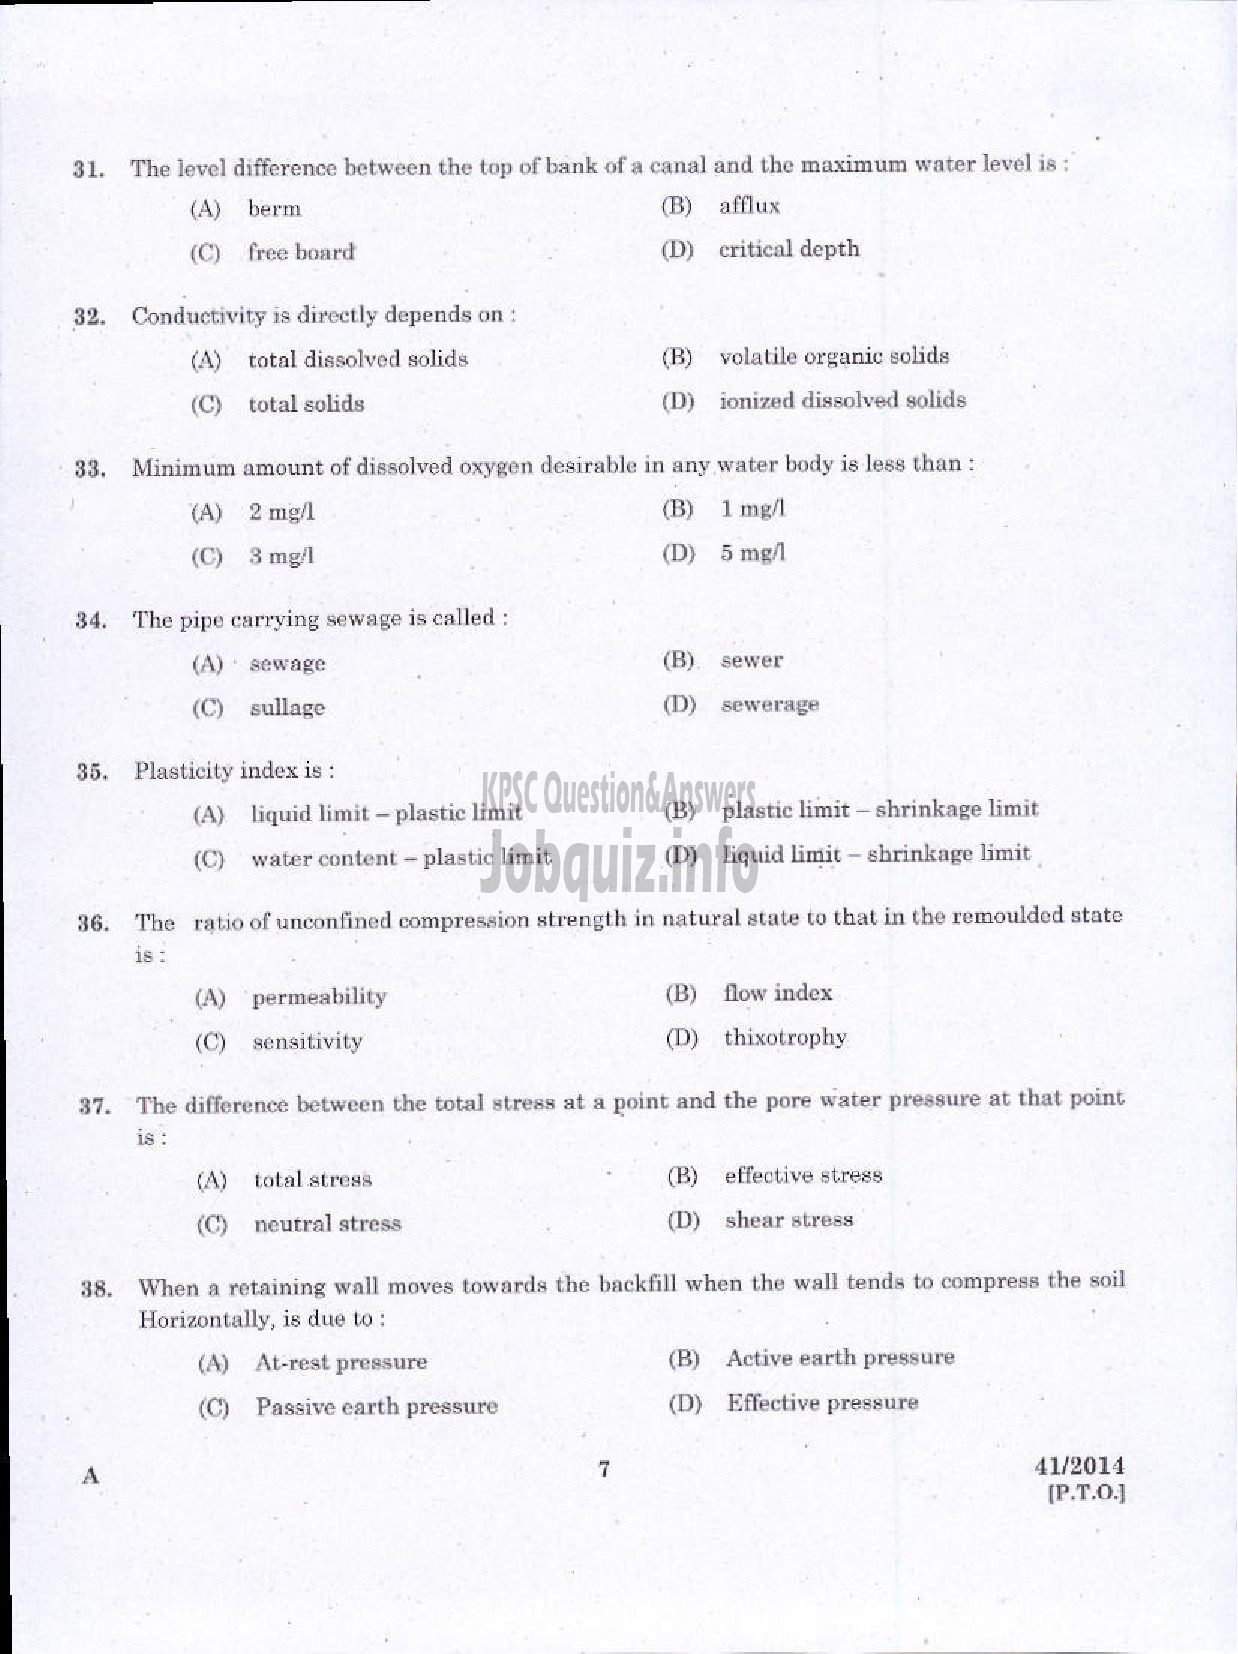 Kerala PSC Question Paper - WORK SUPERVISOR OVERSEER GRADE II DRAUGHTSMAN GRADE II-5